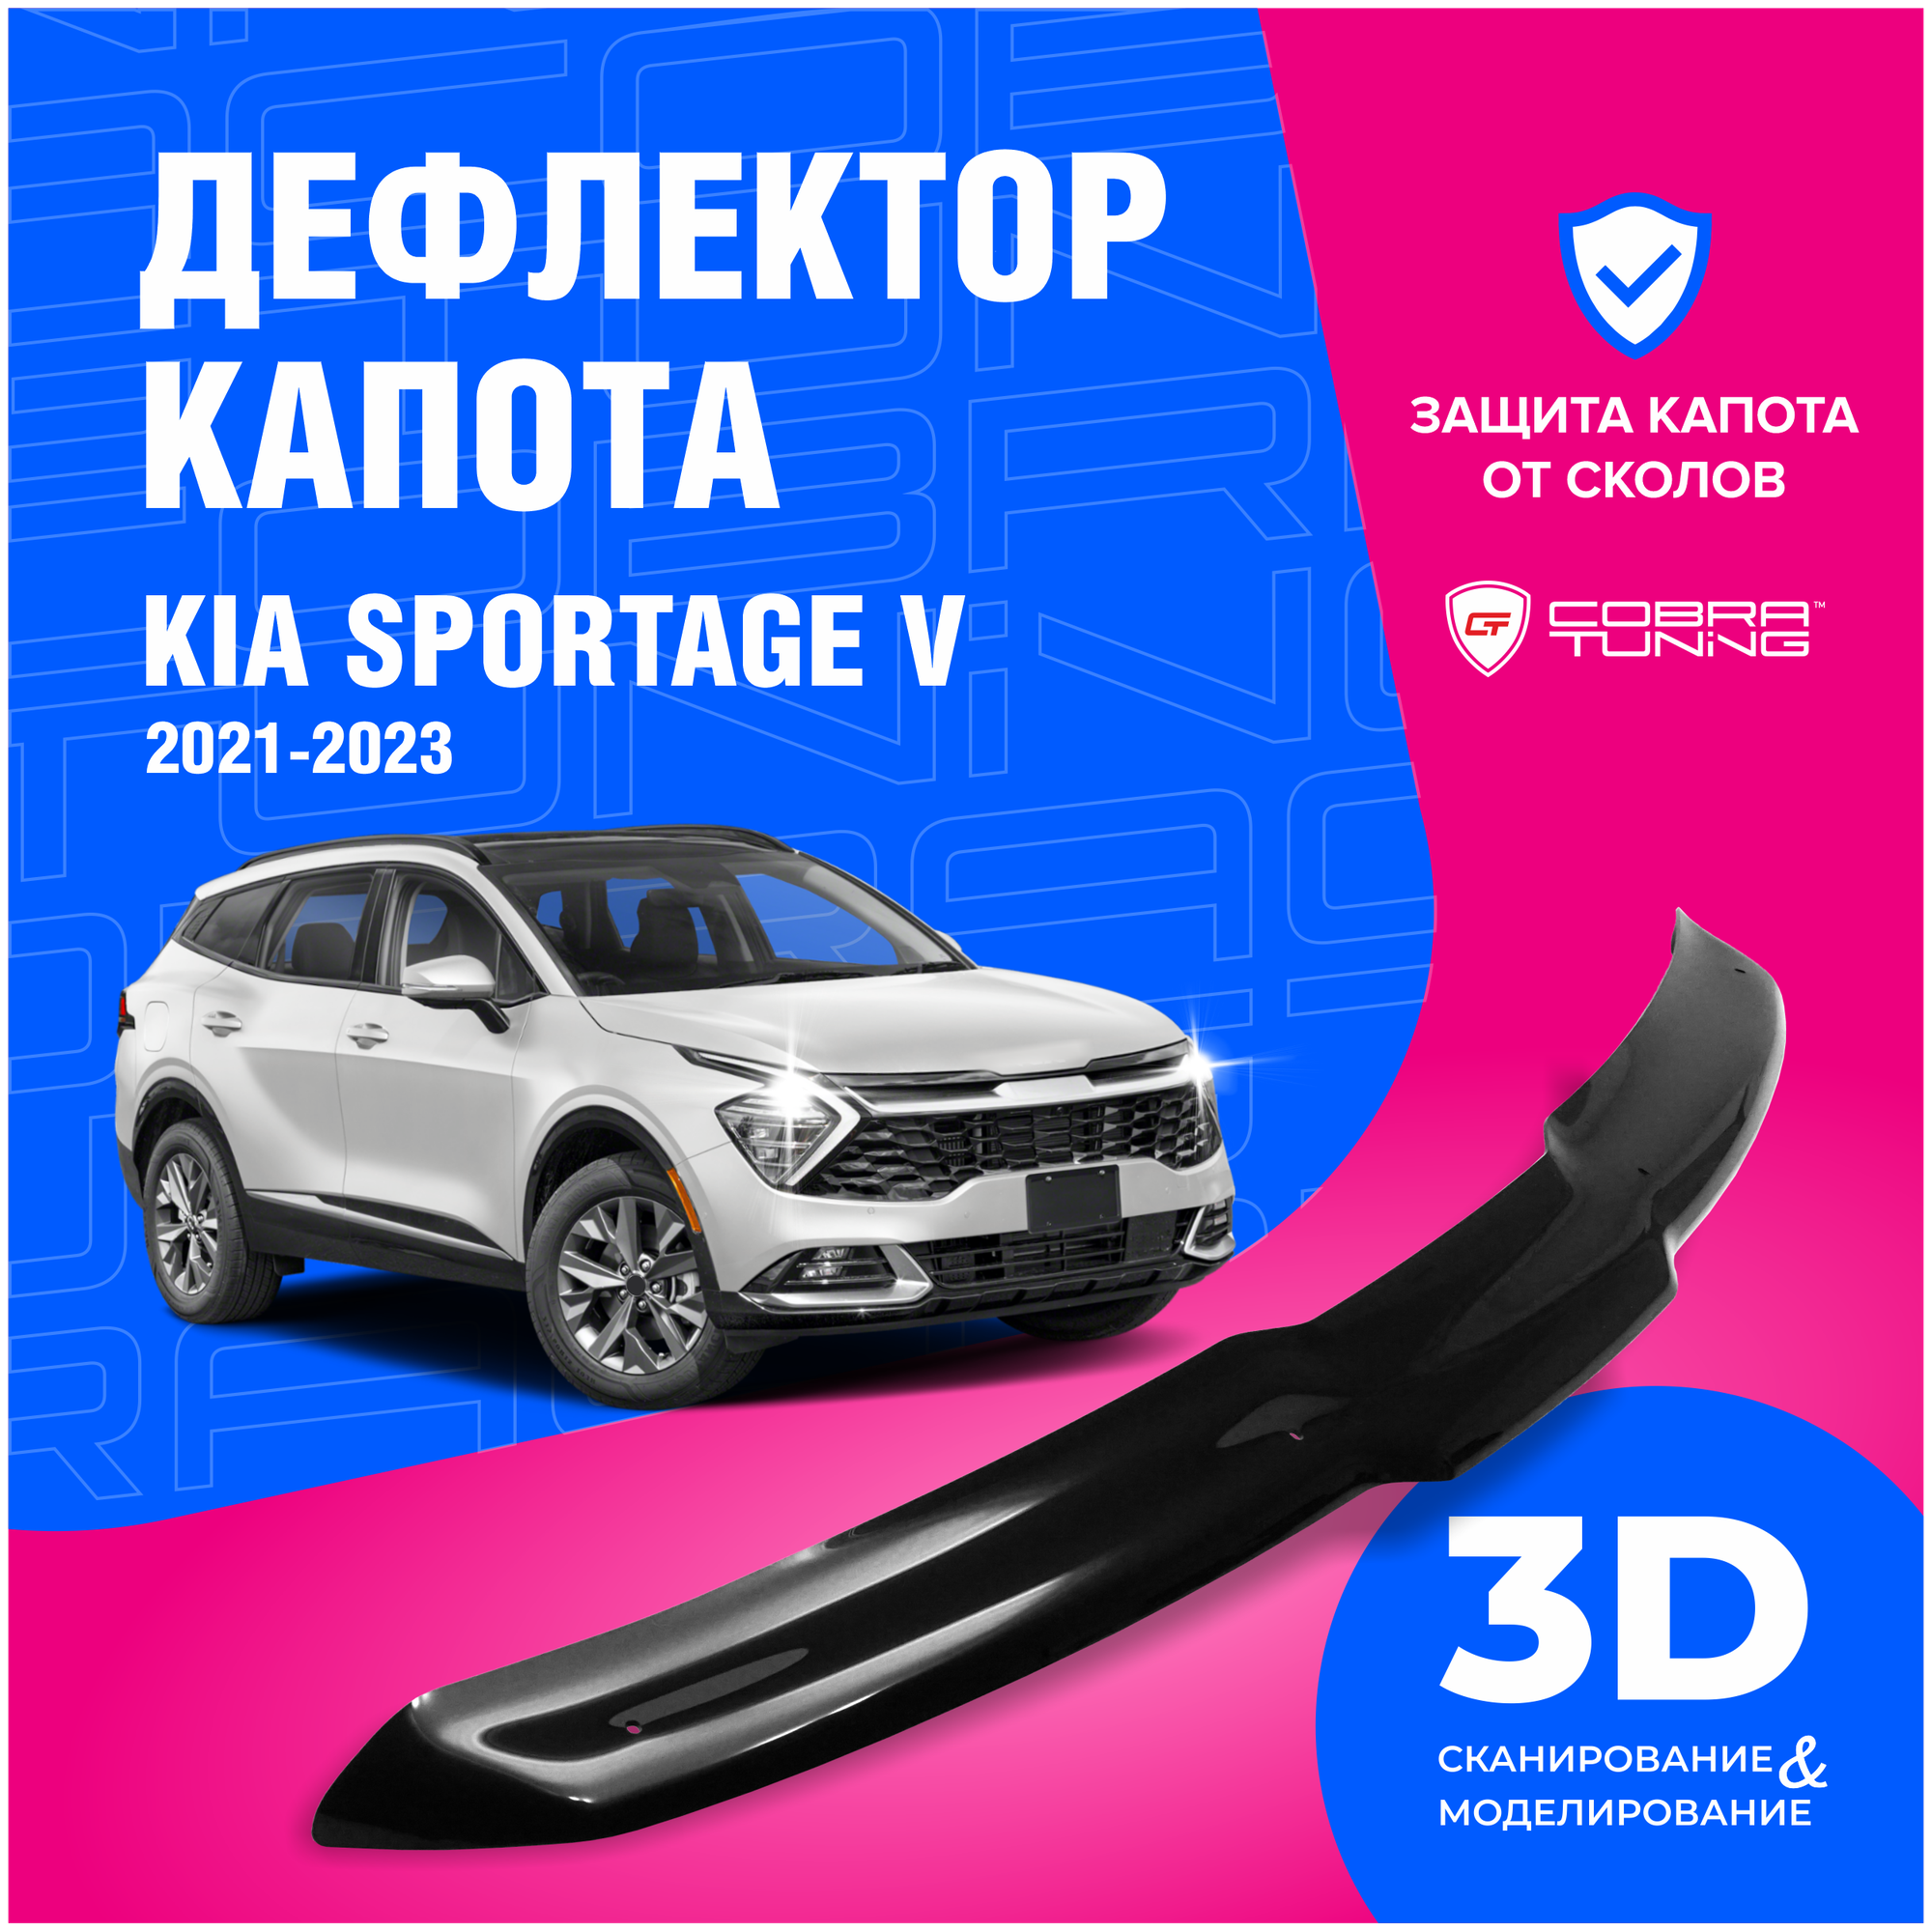 Дефлектор капота для автомобиля Kia Sportage V (Киа Спортейдж 5) 2021-2023 мухобойка защита от сколов Cobra Tuning